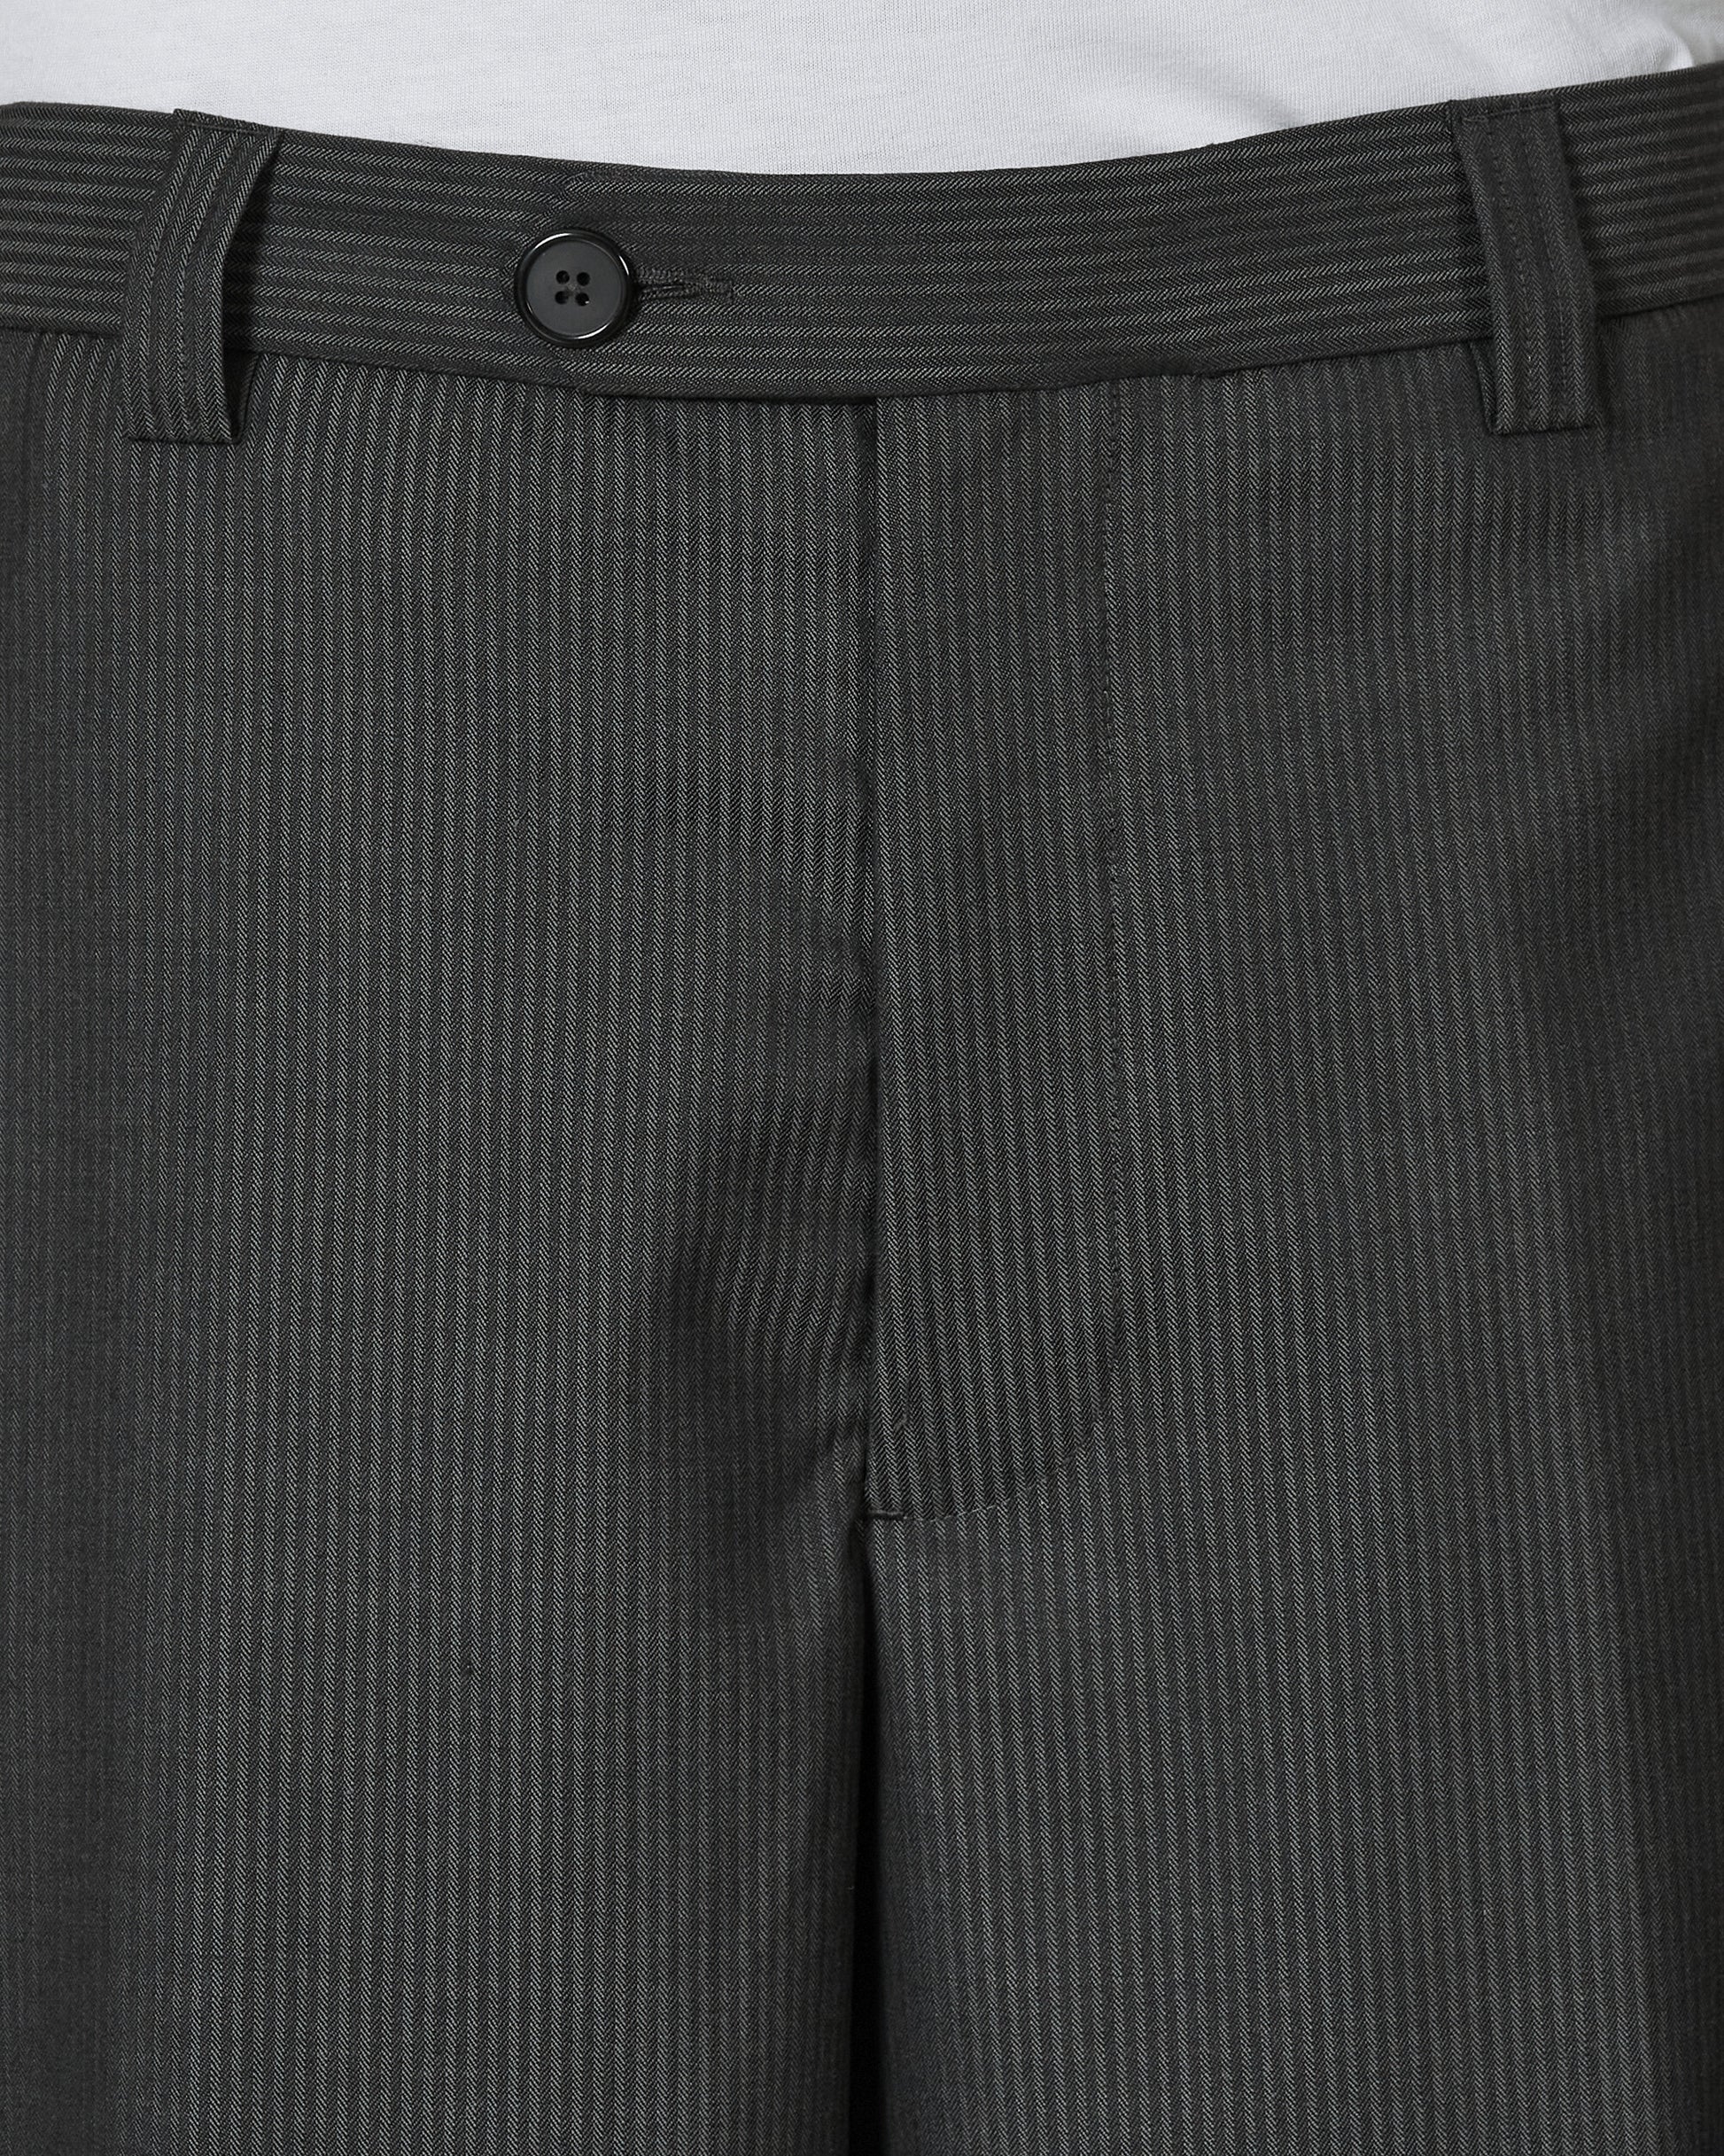 mfpen Studio Trousers Grey Stripe Pants Casual M124-41  1